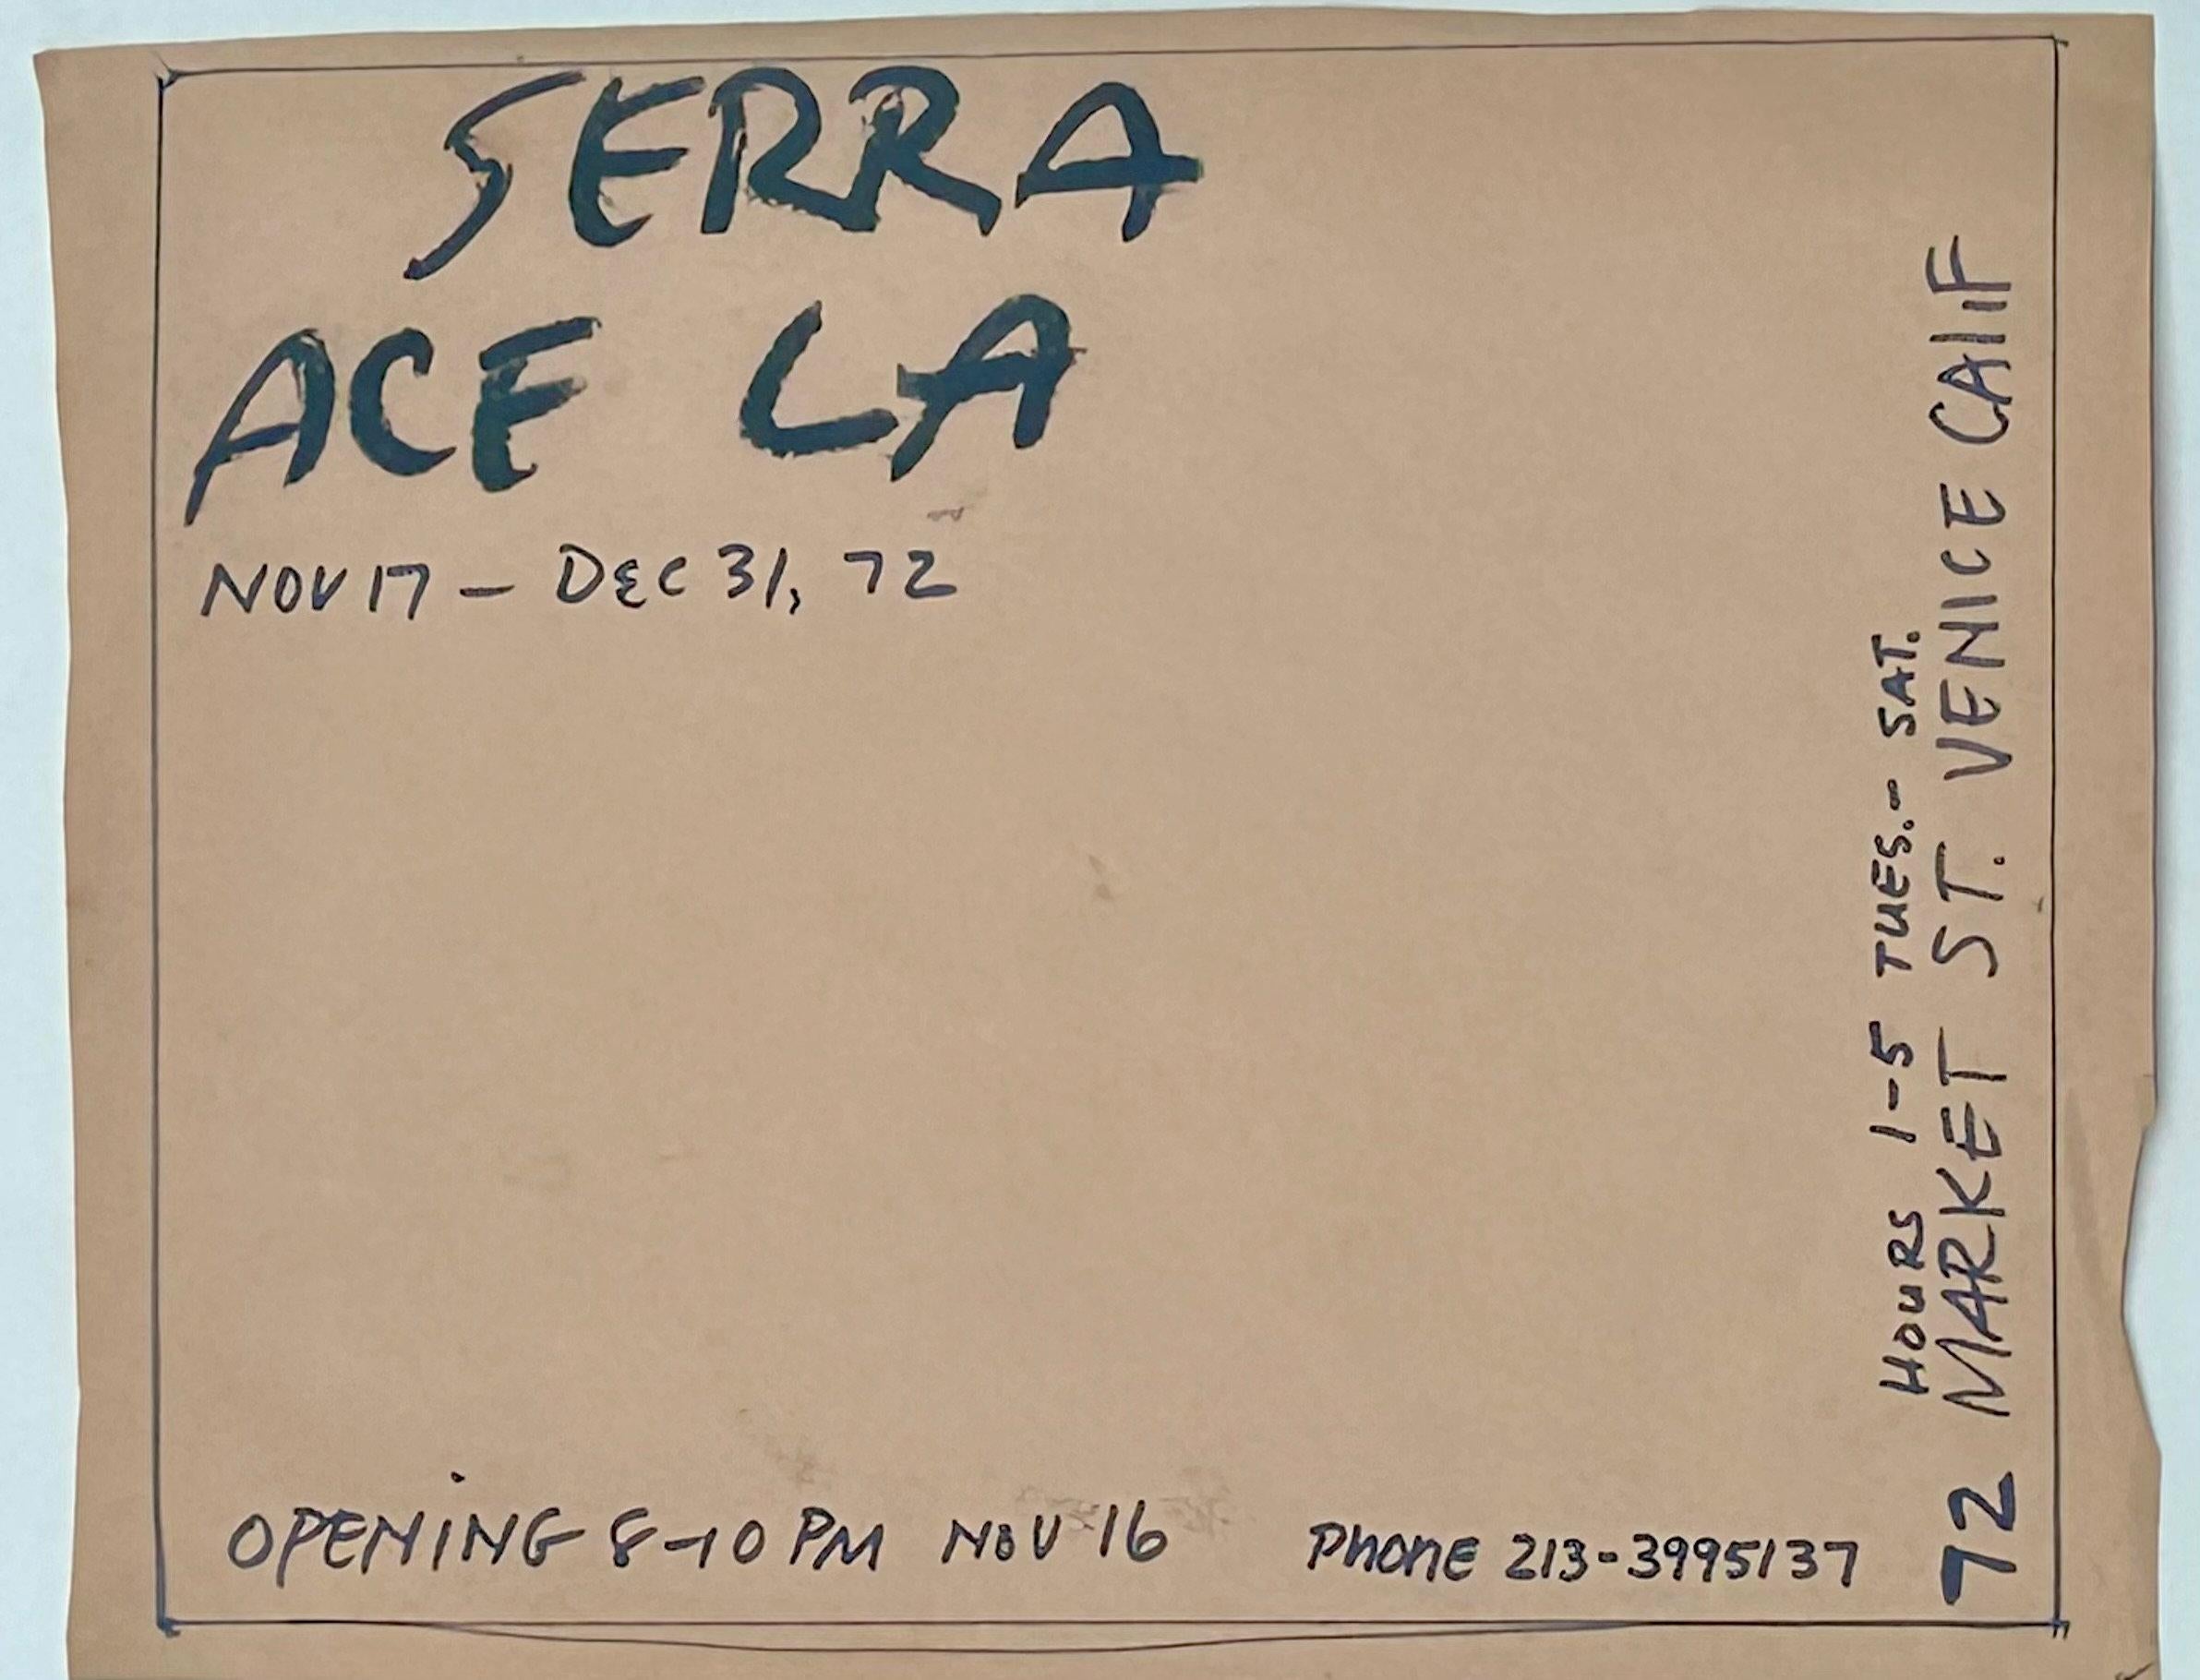 Richard SERRA
Dessin de l'affiche de l'exposition Ace LA, 1972
Encre sur papier
8 1/2 x 11 pouces

Provenance :
L'artiste
Ace Gallery, Los Angeles

Connu pour ses sculptures géométriques en acier à grande échelle, Richard Serra a créé des œuvres